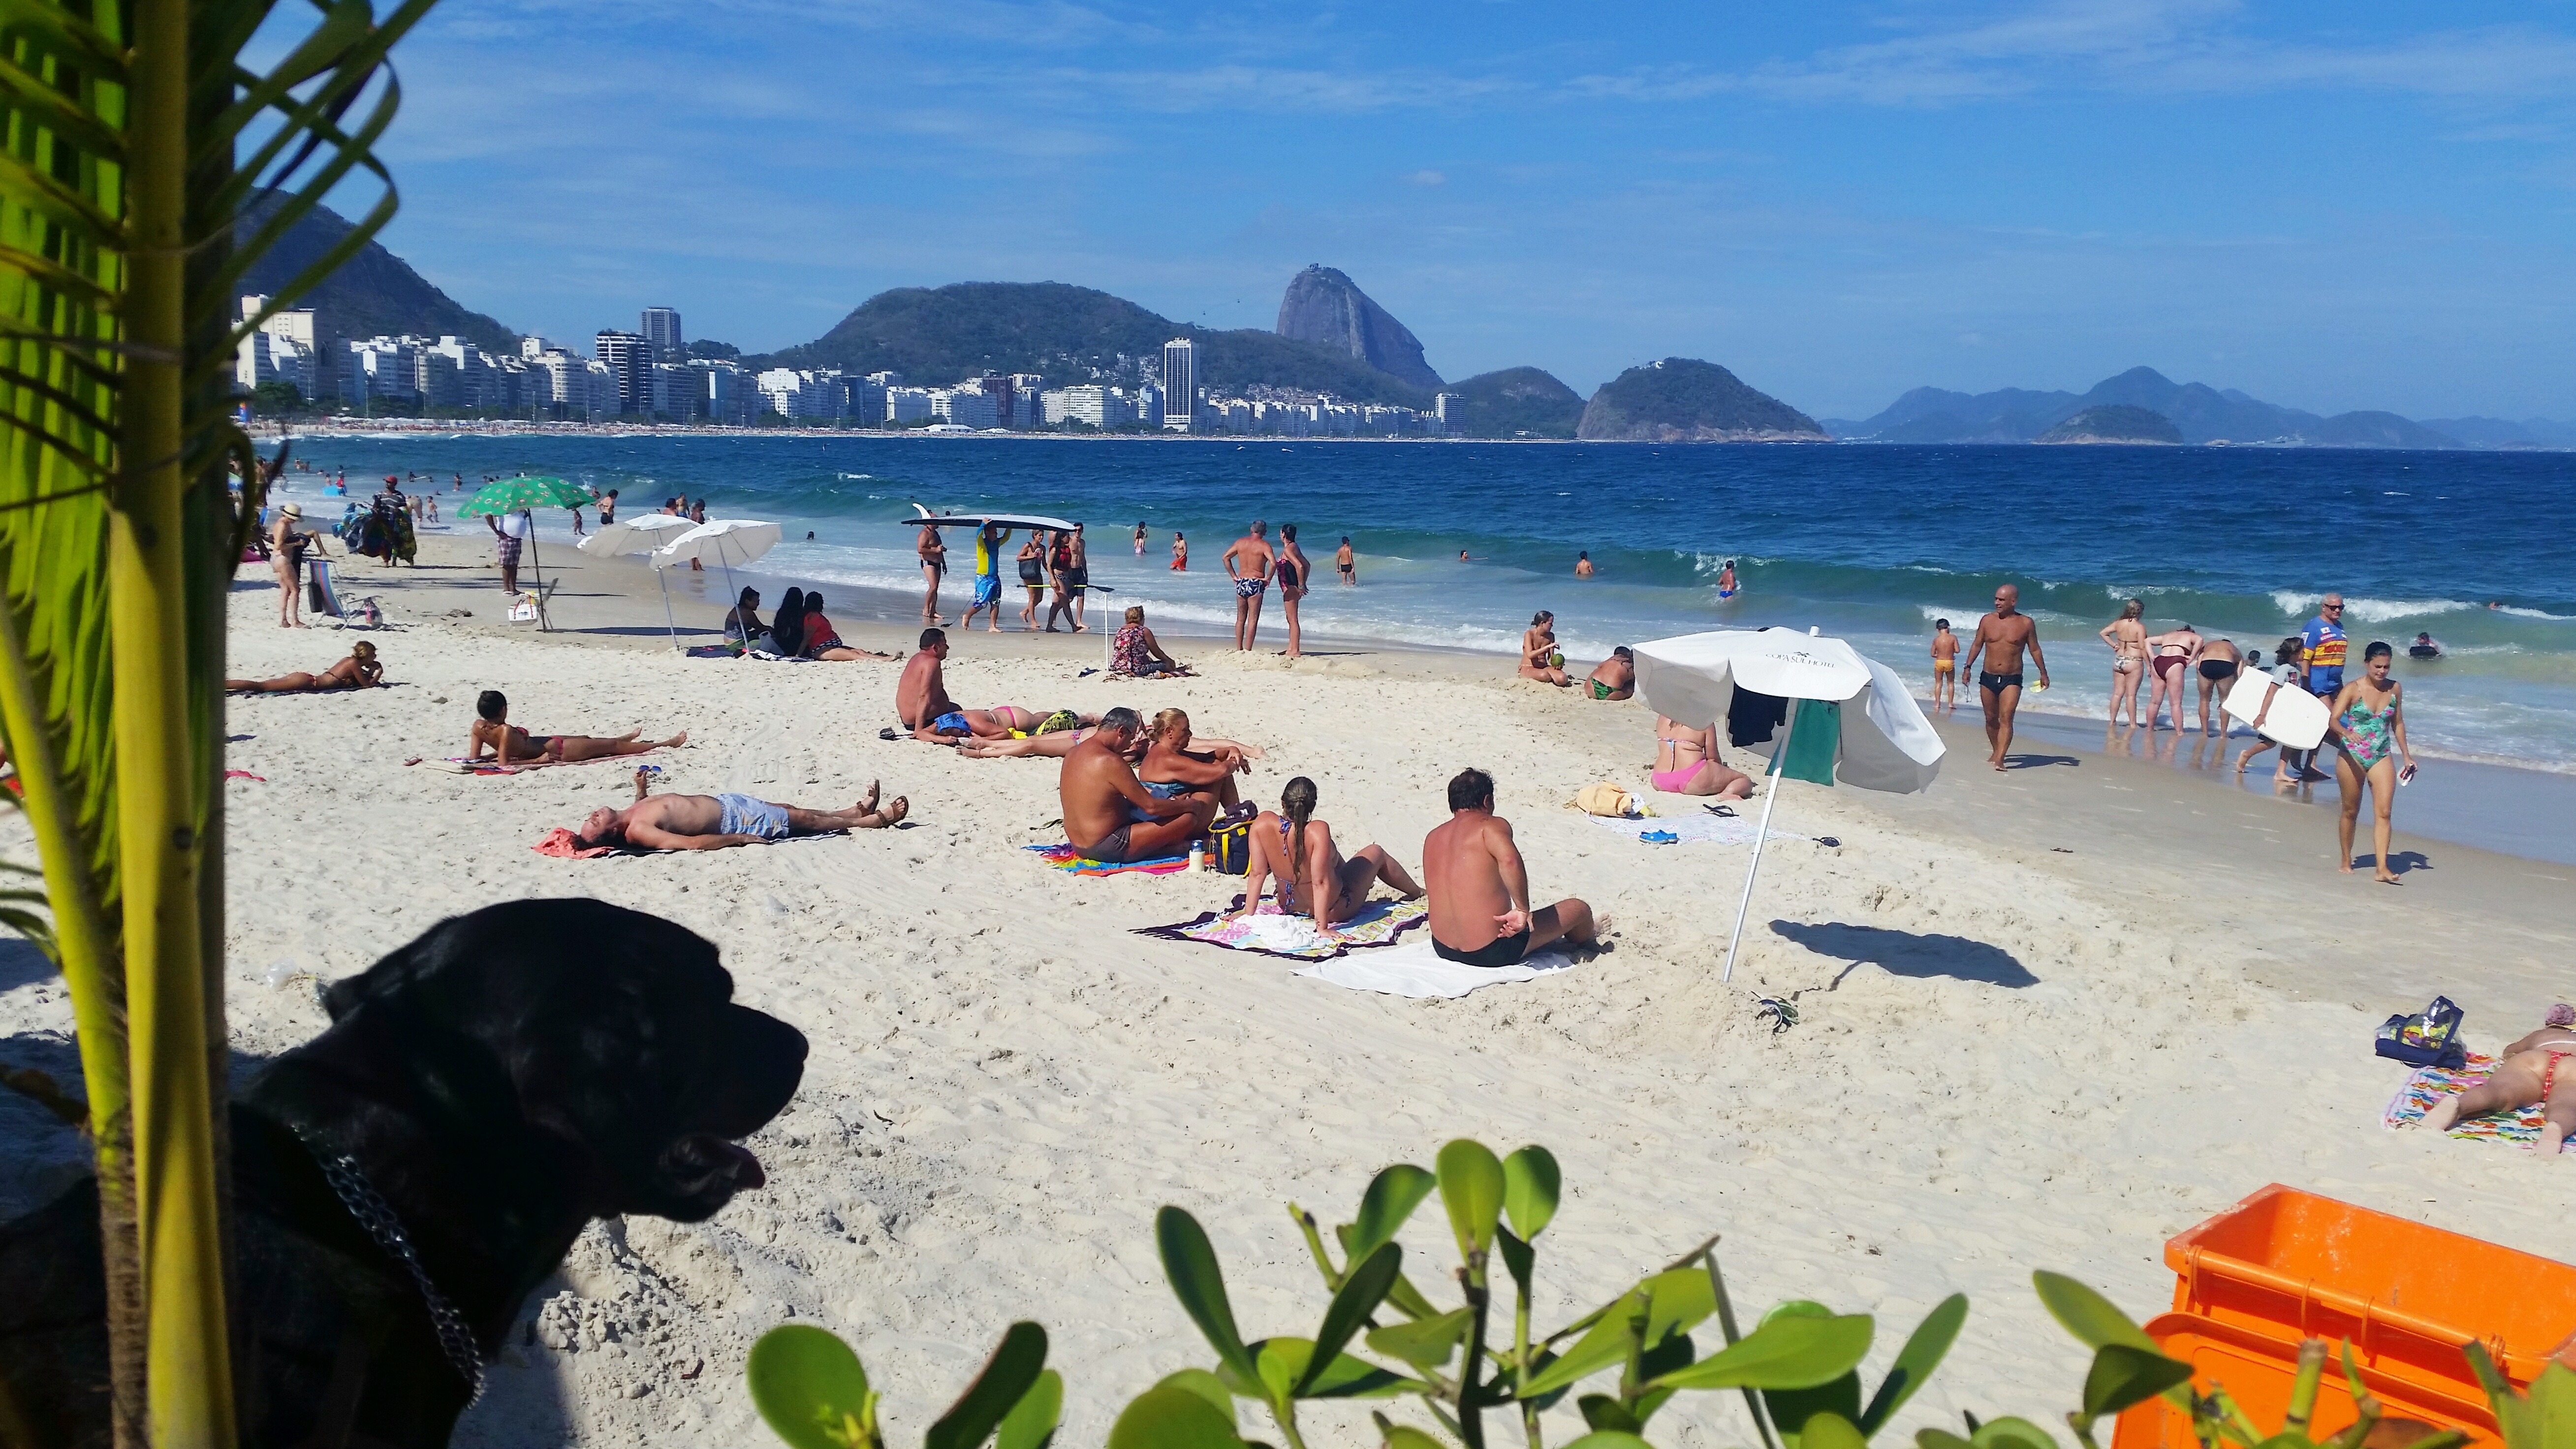 One side of Rio de Janeiro - Copacabana Beach